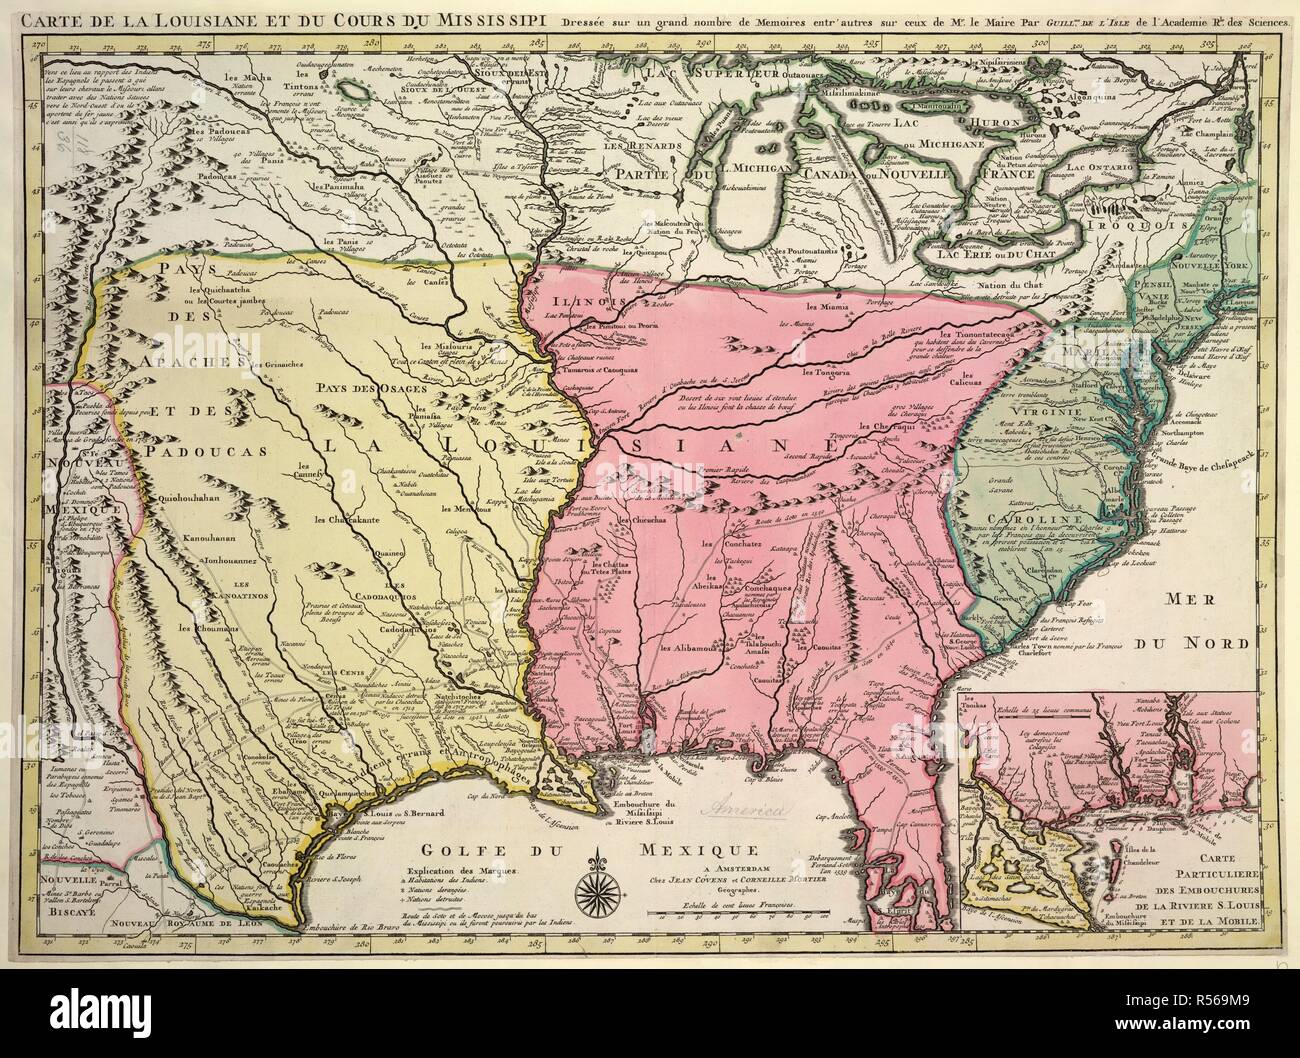 Map of Louisiana and Mississippi. Carte de la Louisiane et du Cours du  Mississipi Amsterdam, [1710?]. Source: Maps.K.Top.118.36. Author: Isle,  G. de l' Stock Photo - Alamy